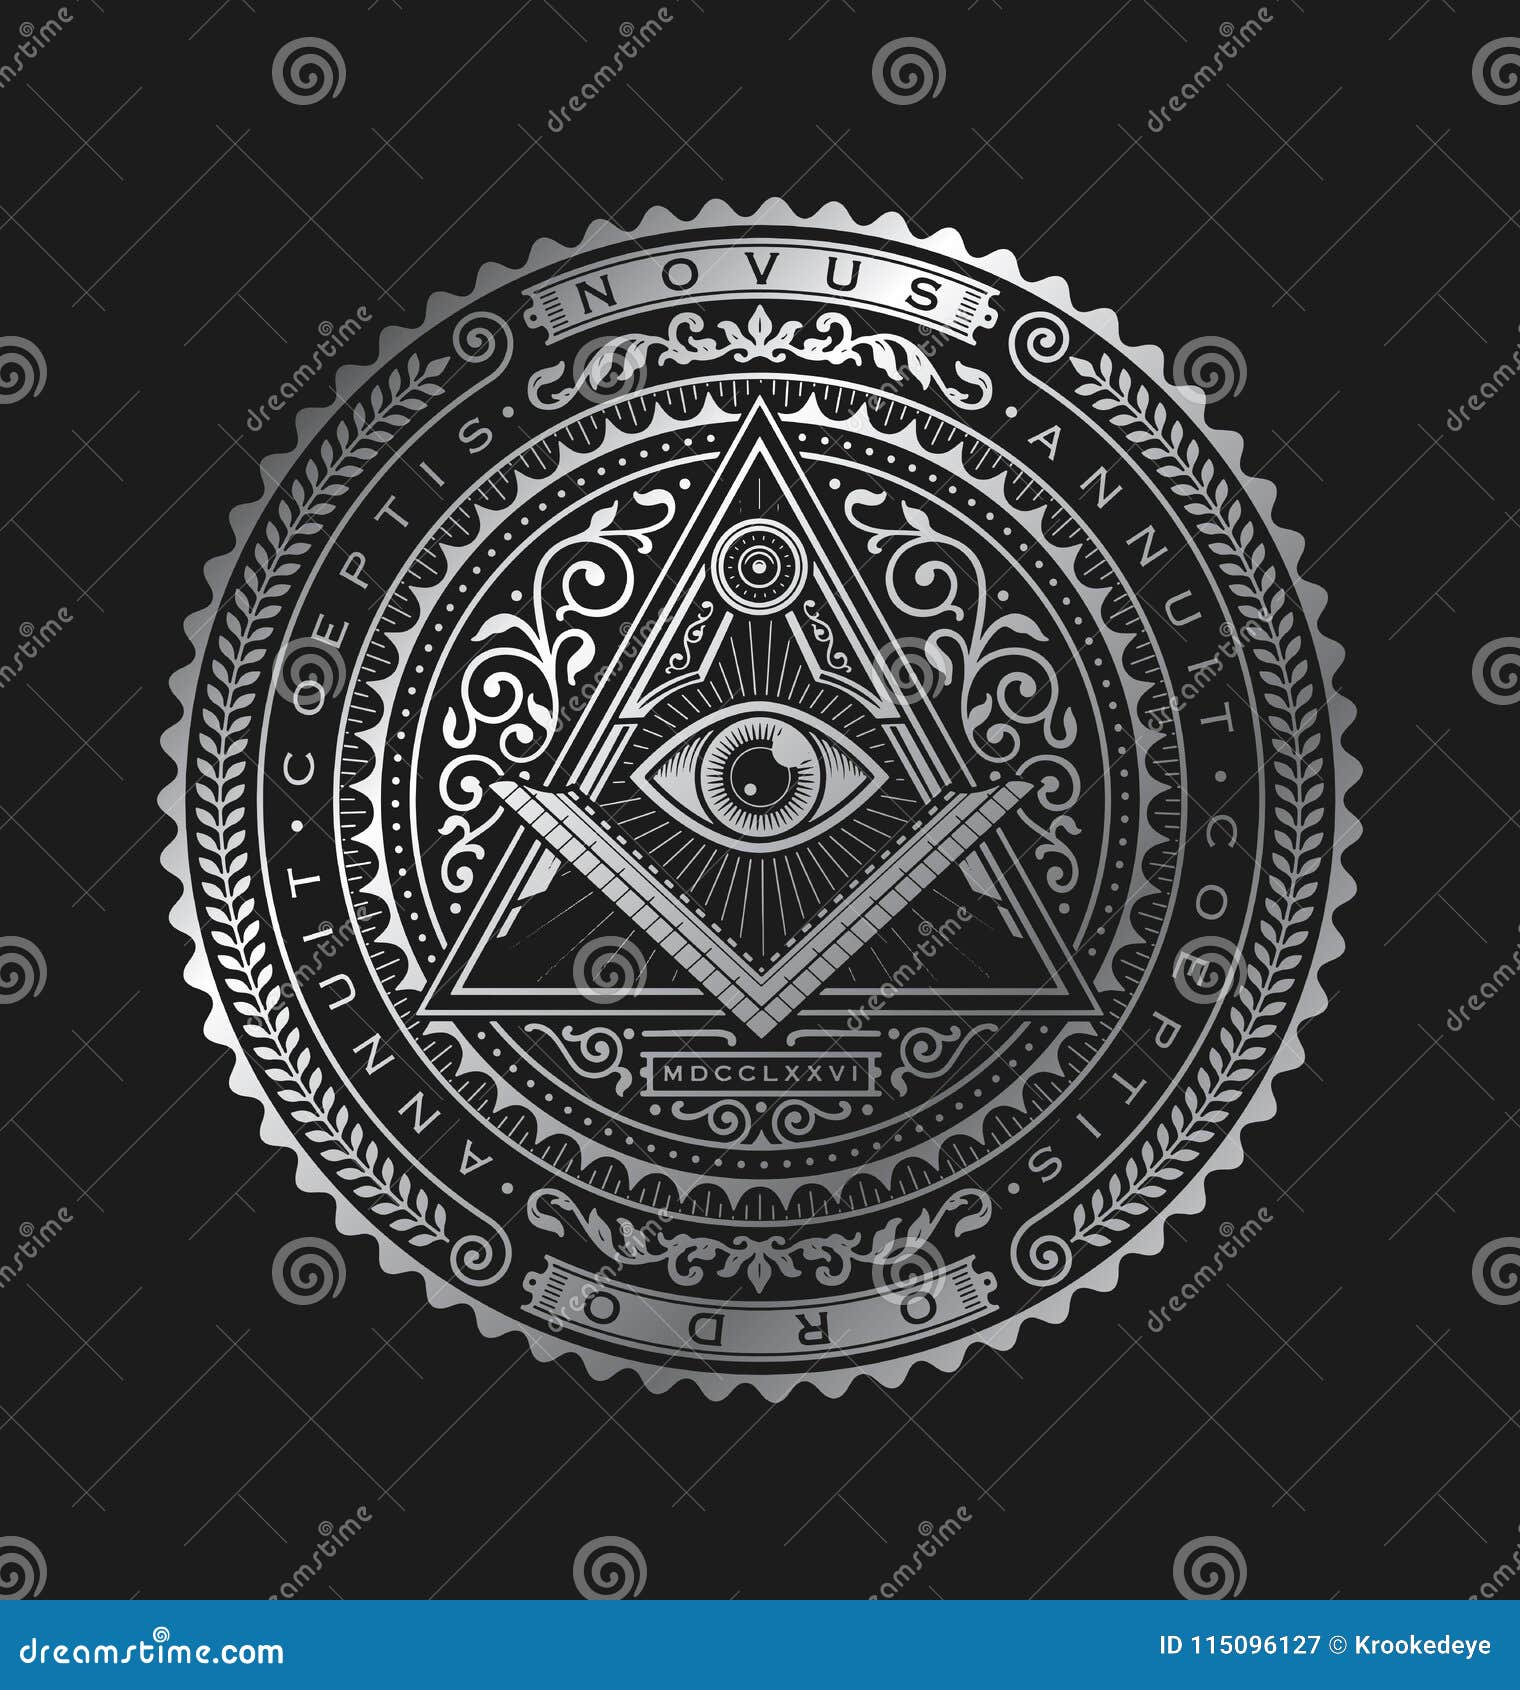 all seeing eye emblem badge  logo metallic